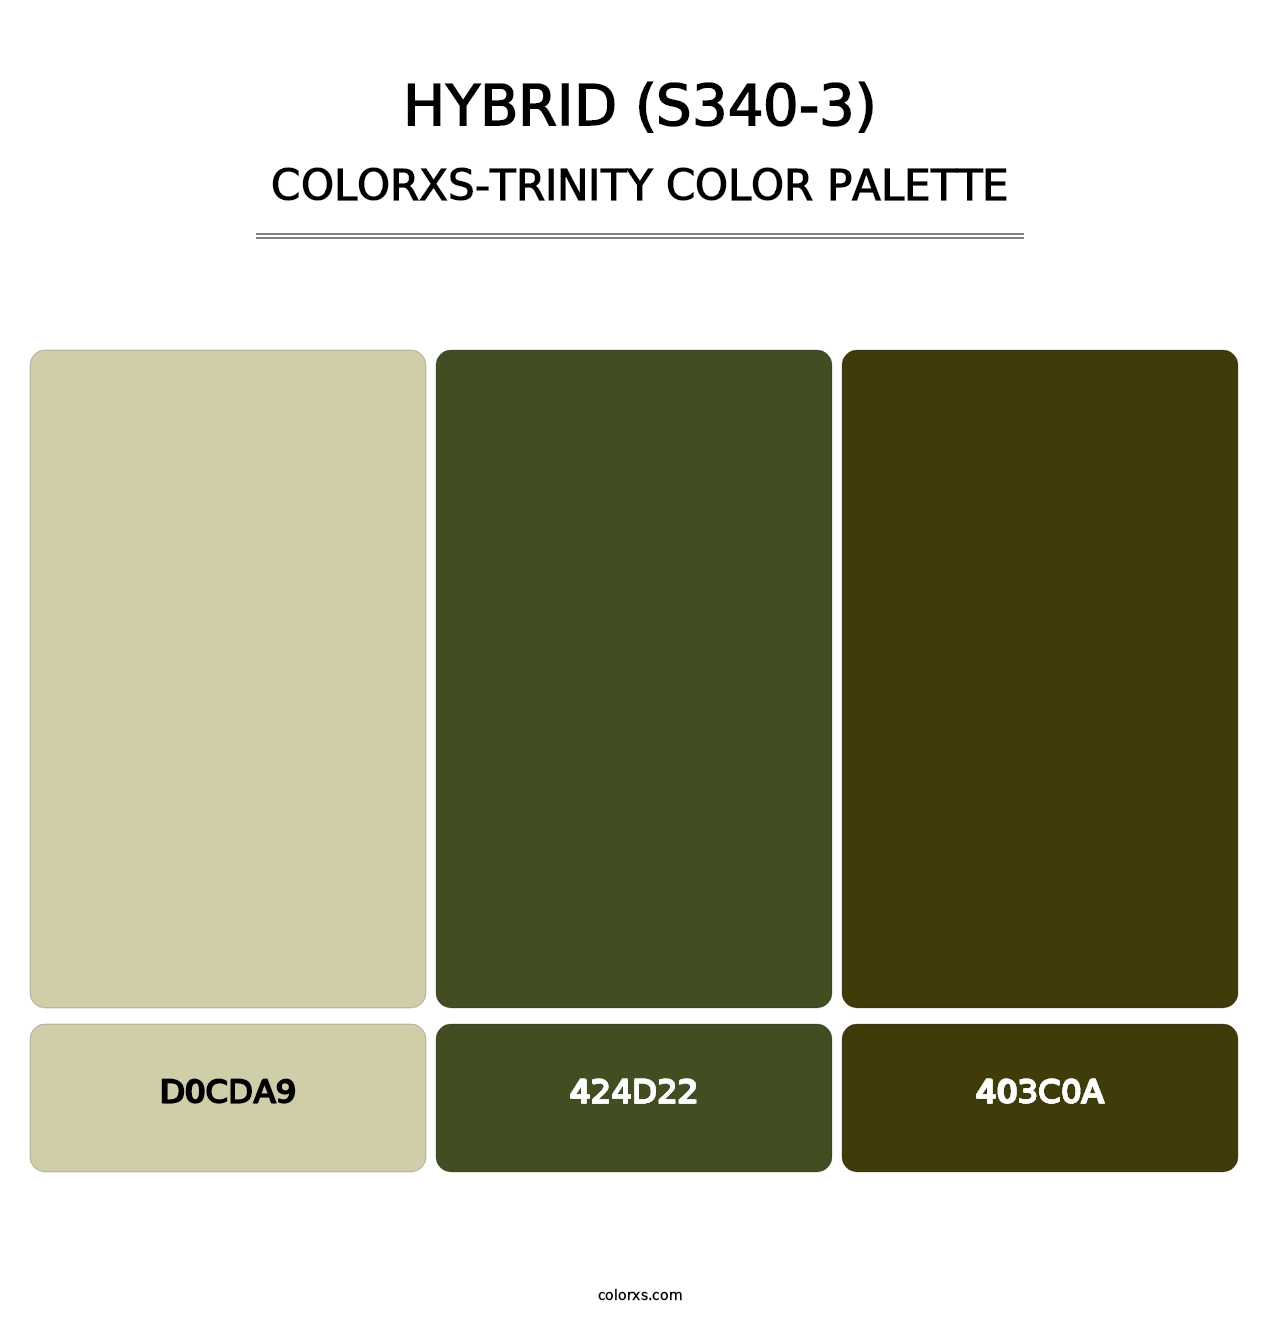 Hybrid (S340-3) - Colorxs Trinity Palette